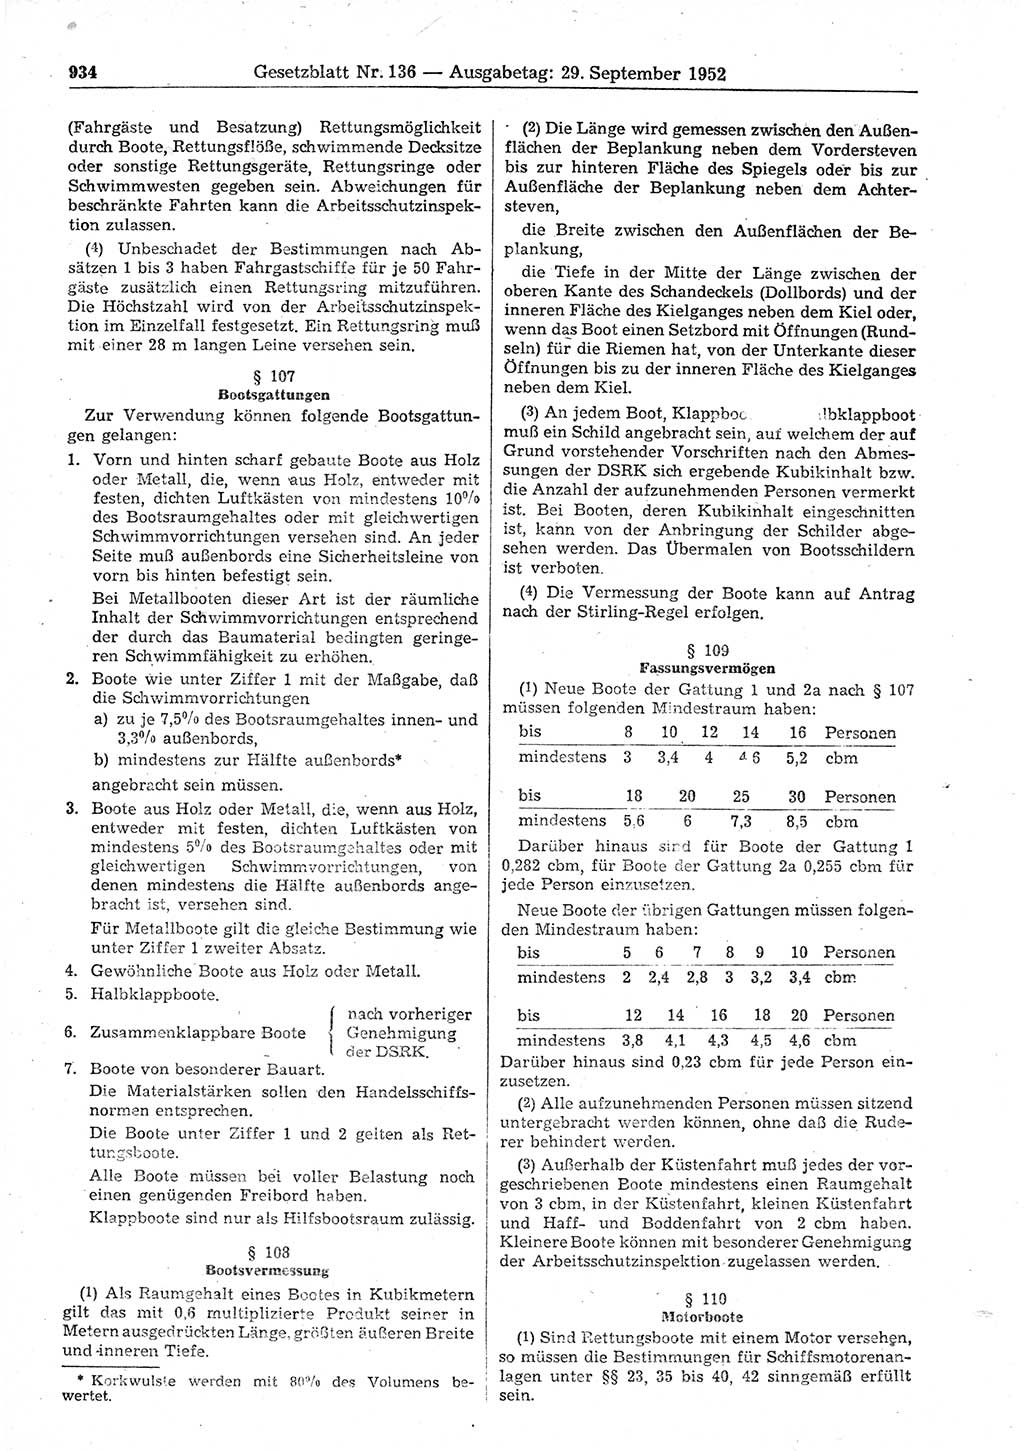 Gesetzblatt (GBl.) der Deutschen Demokratischen Republik (DDR) 1952, Seite 934 (GBl. DDR 1952, S. 934)